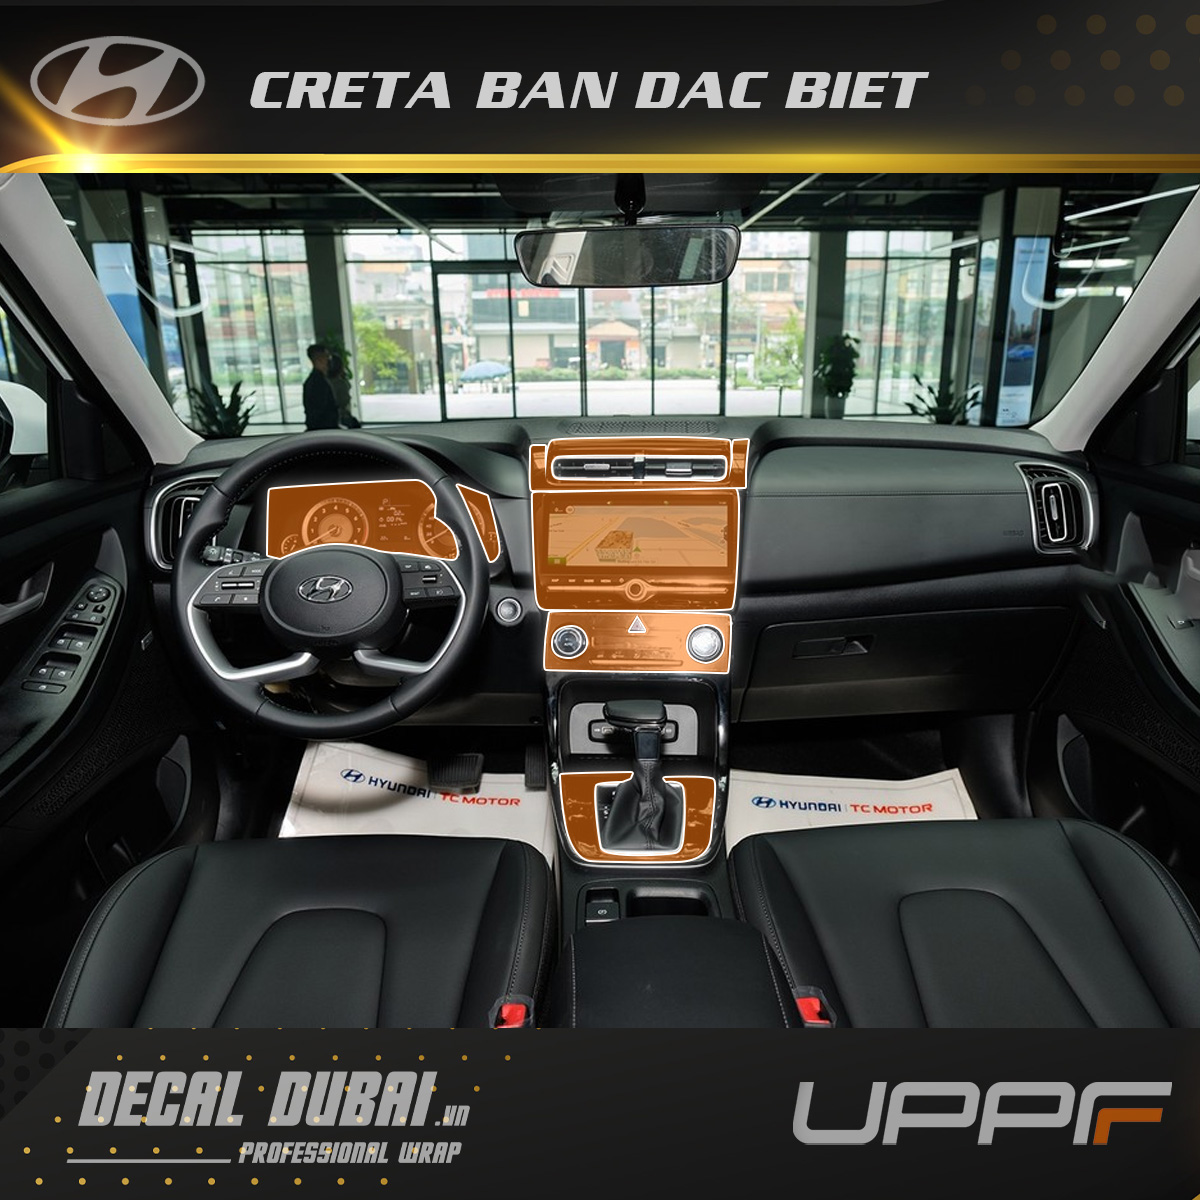 More images: Next-gen Hyundai Creta's interior | Team-BHP